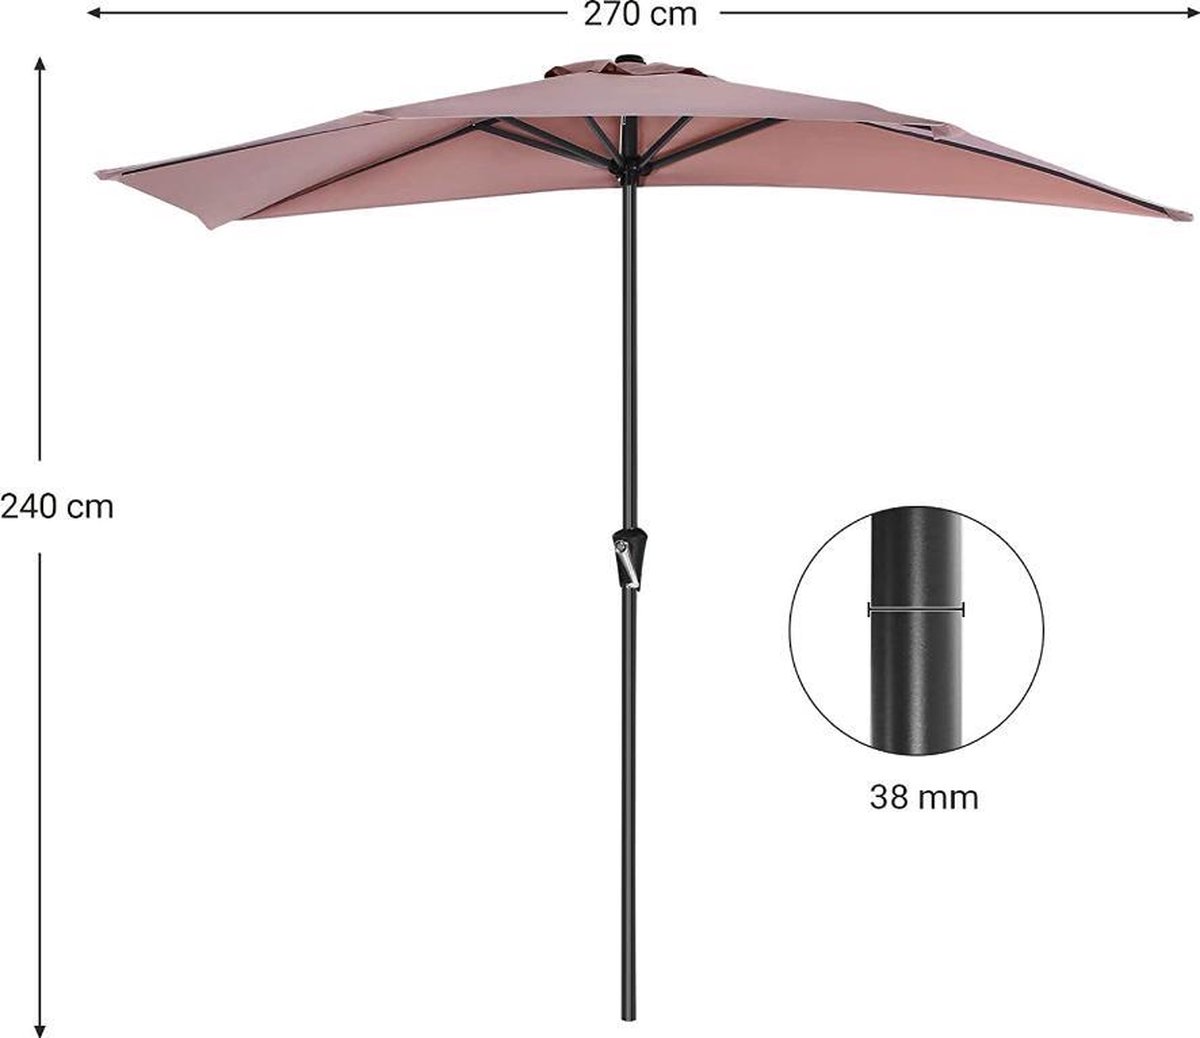 MIRA Home - Zonnescherm - Balkonparaplu met zwengel - Zomer - Polyesterweefsel - Taupe - 2,4m